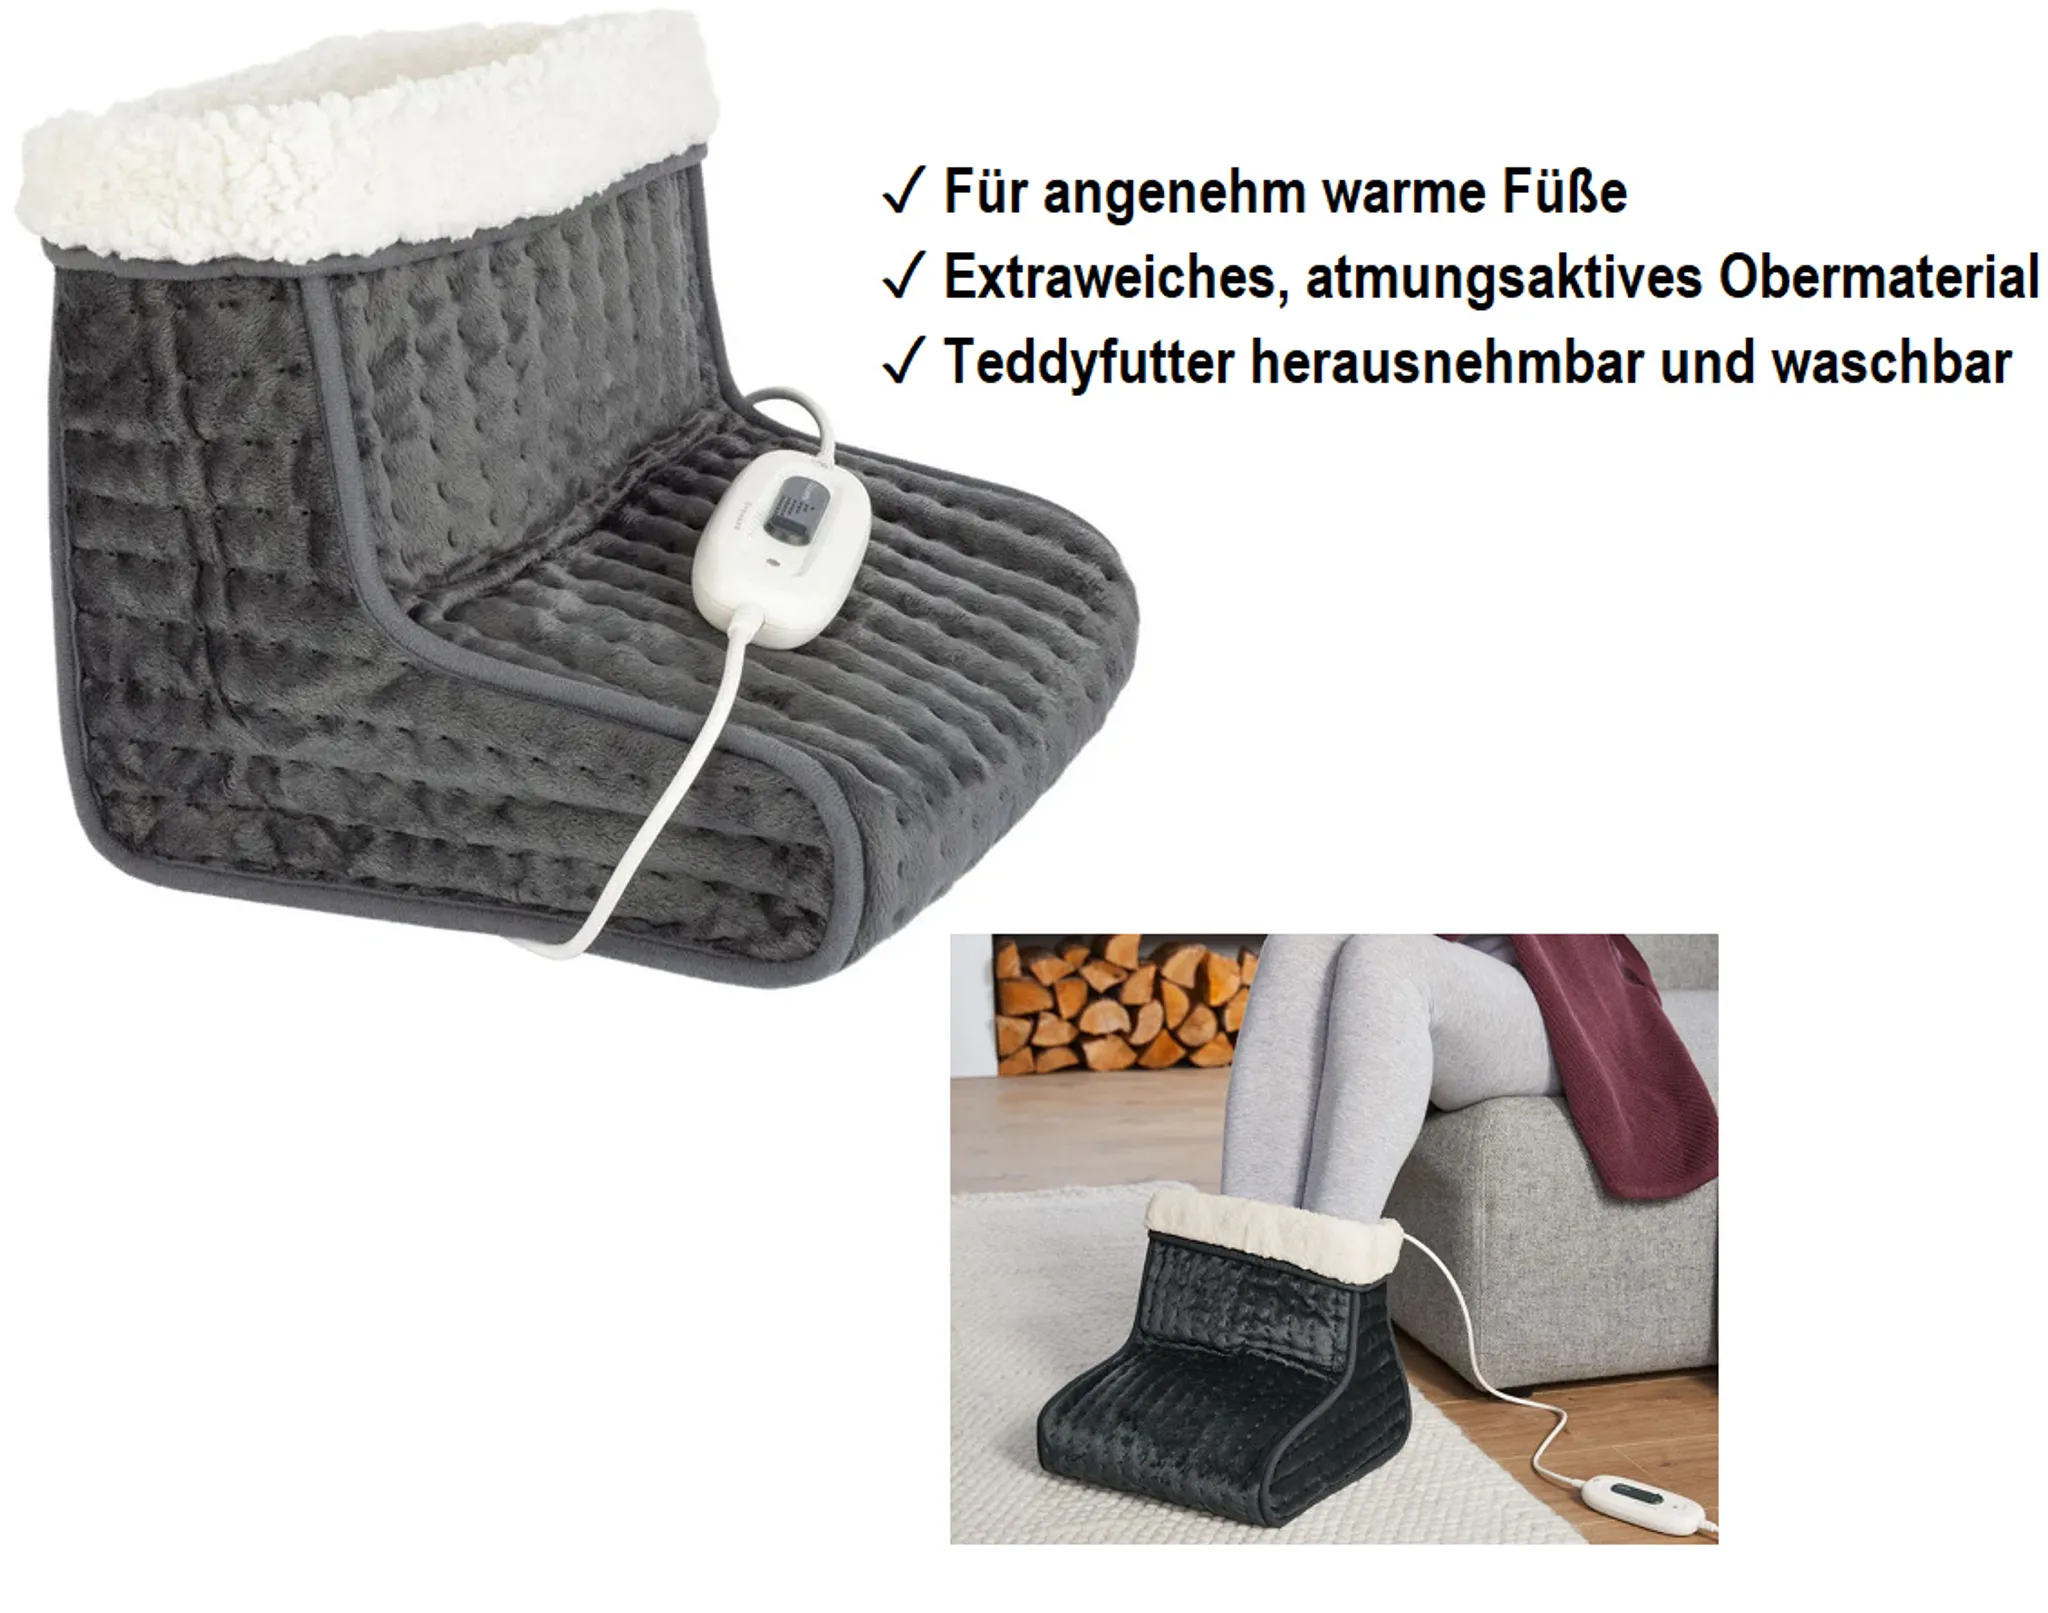 AREBOS Elektrischer Fußwärmer Fußheizung Wärmesack Wärmeschuh Braun waschbar